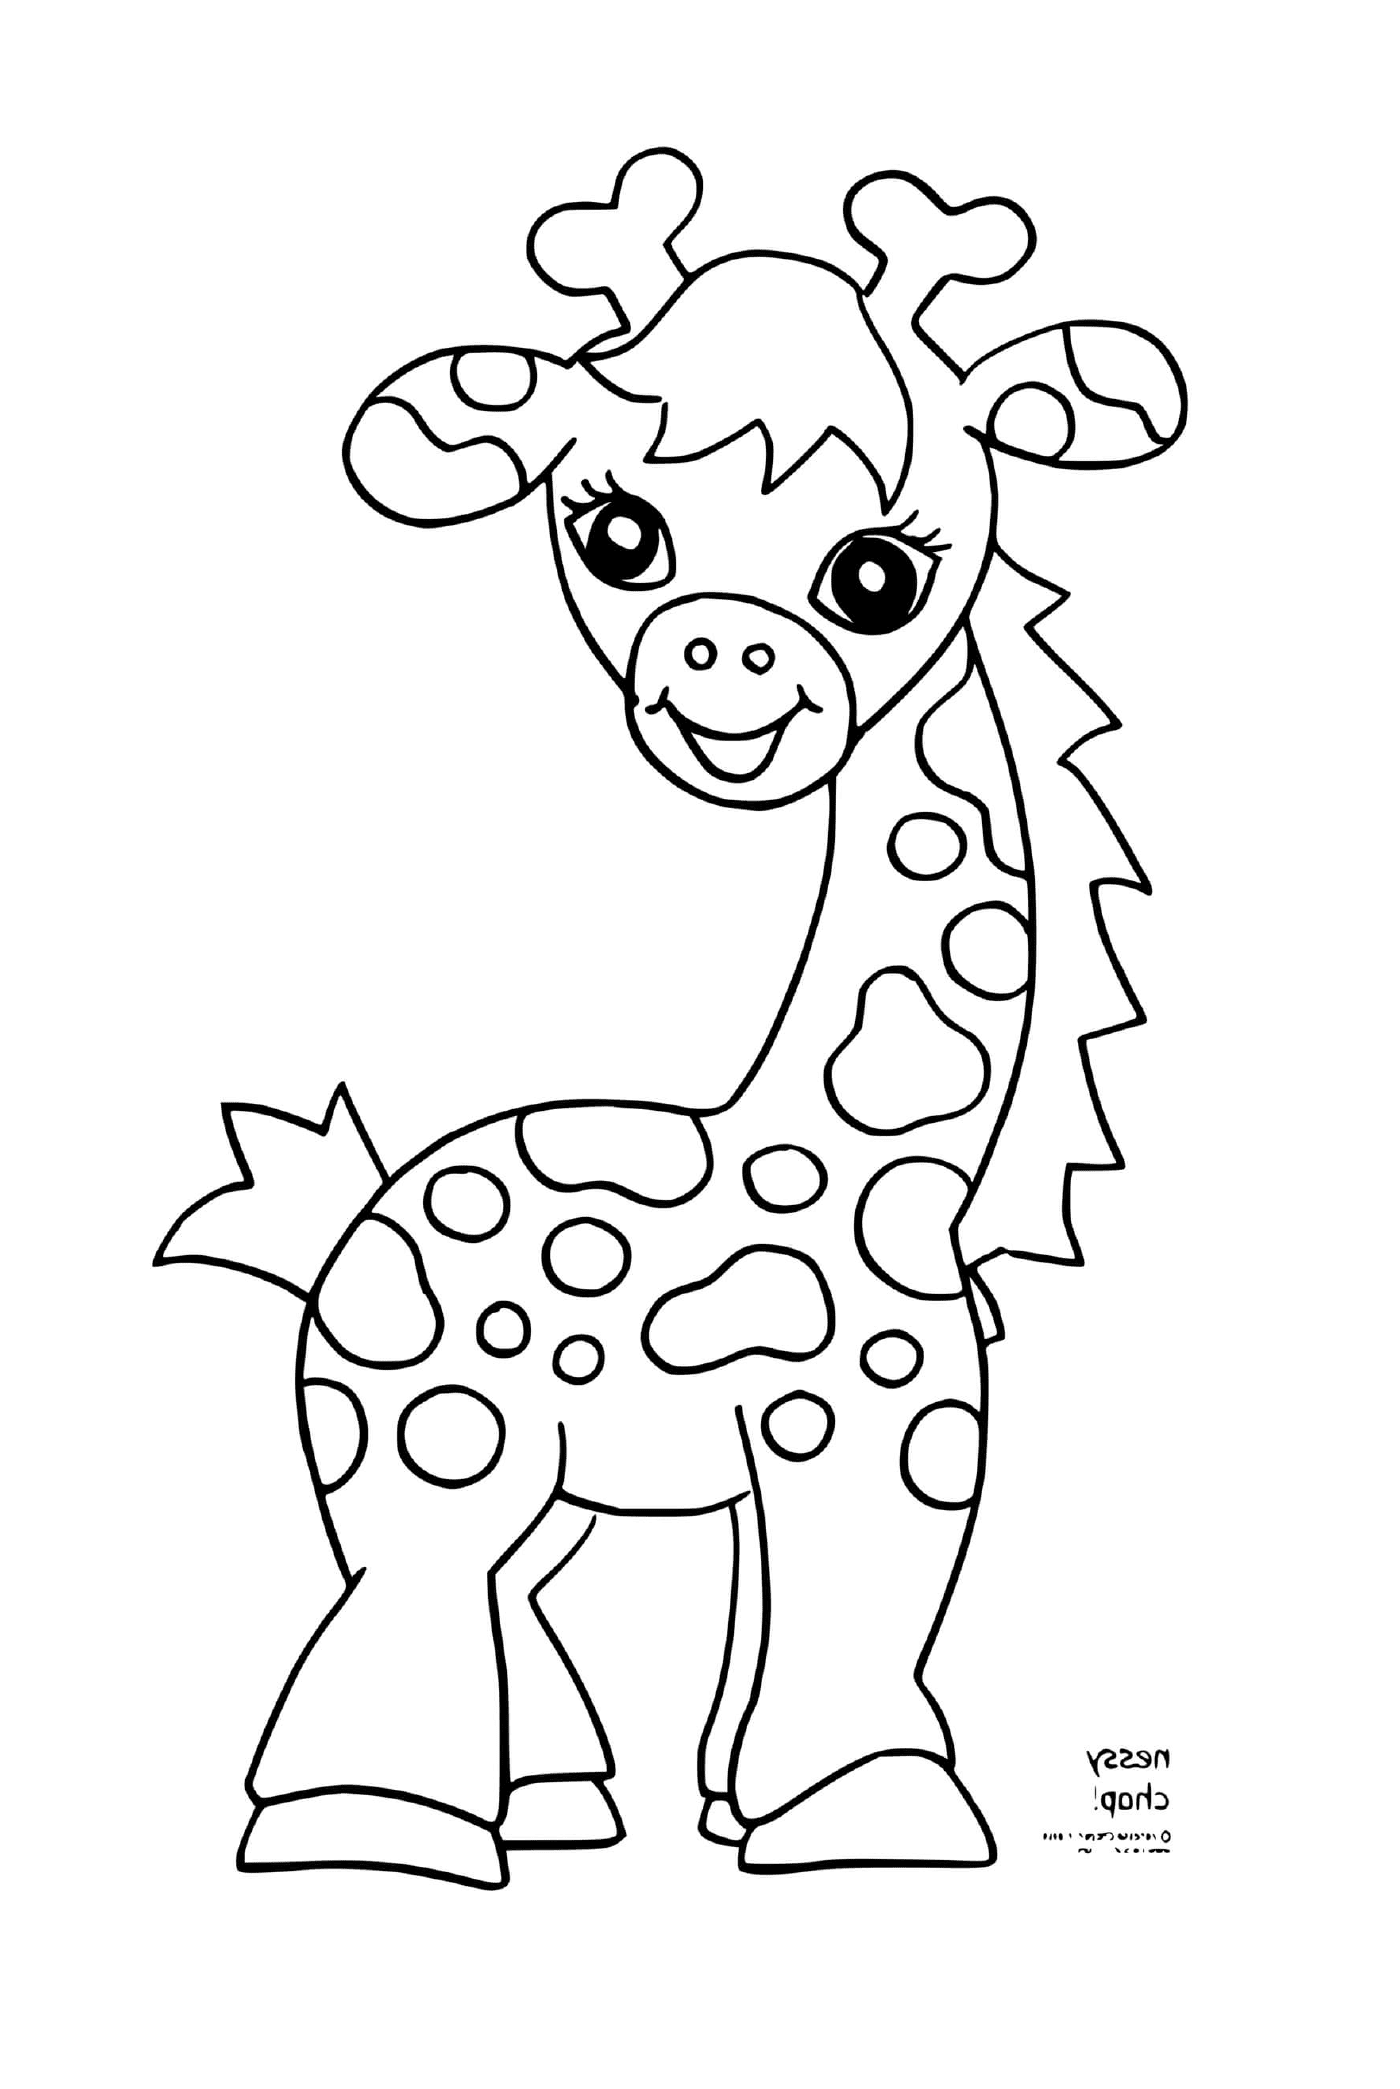   Girafe souriante avec de jolis yeux 